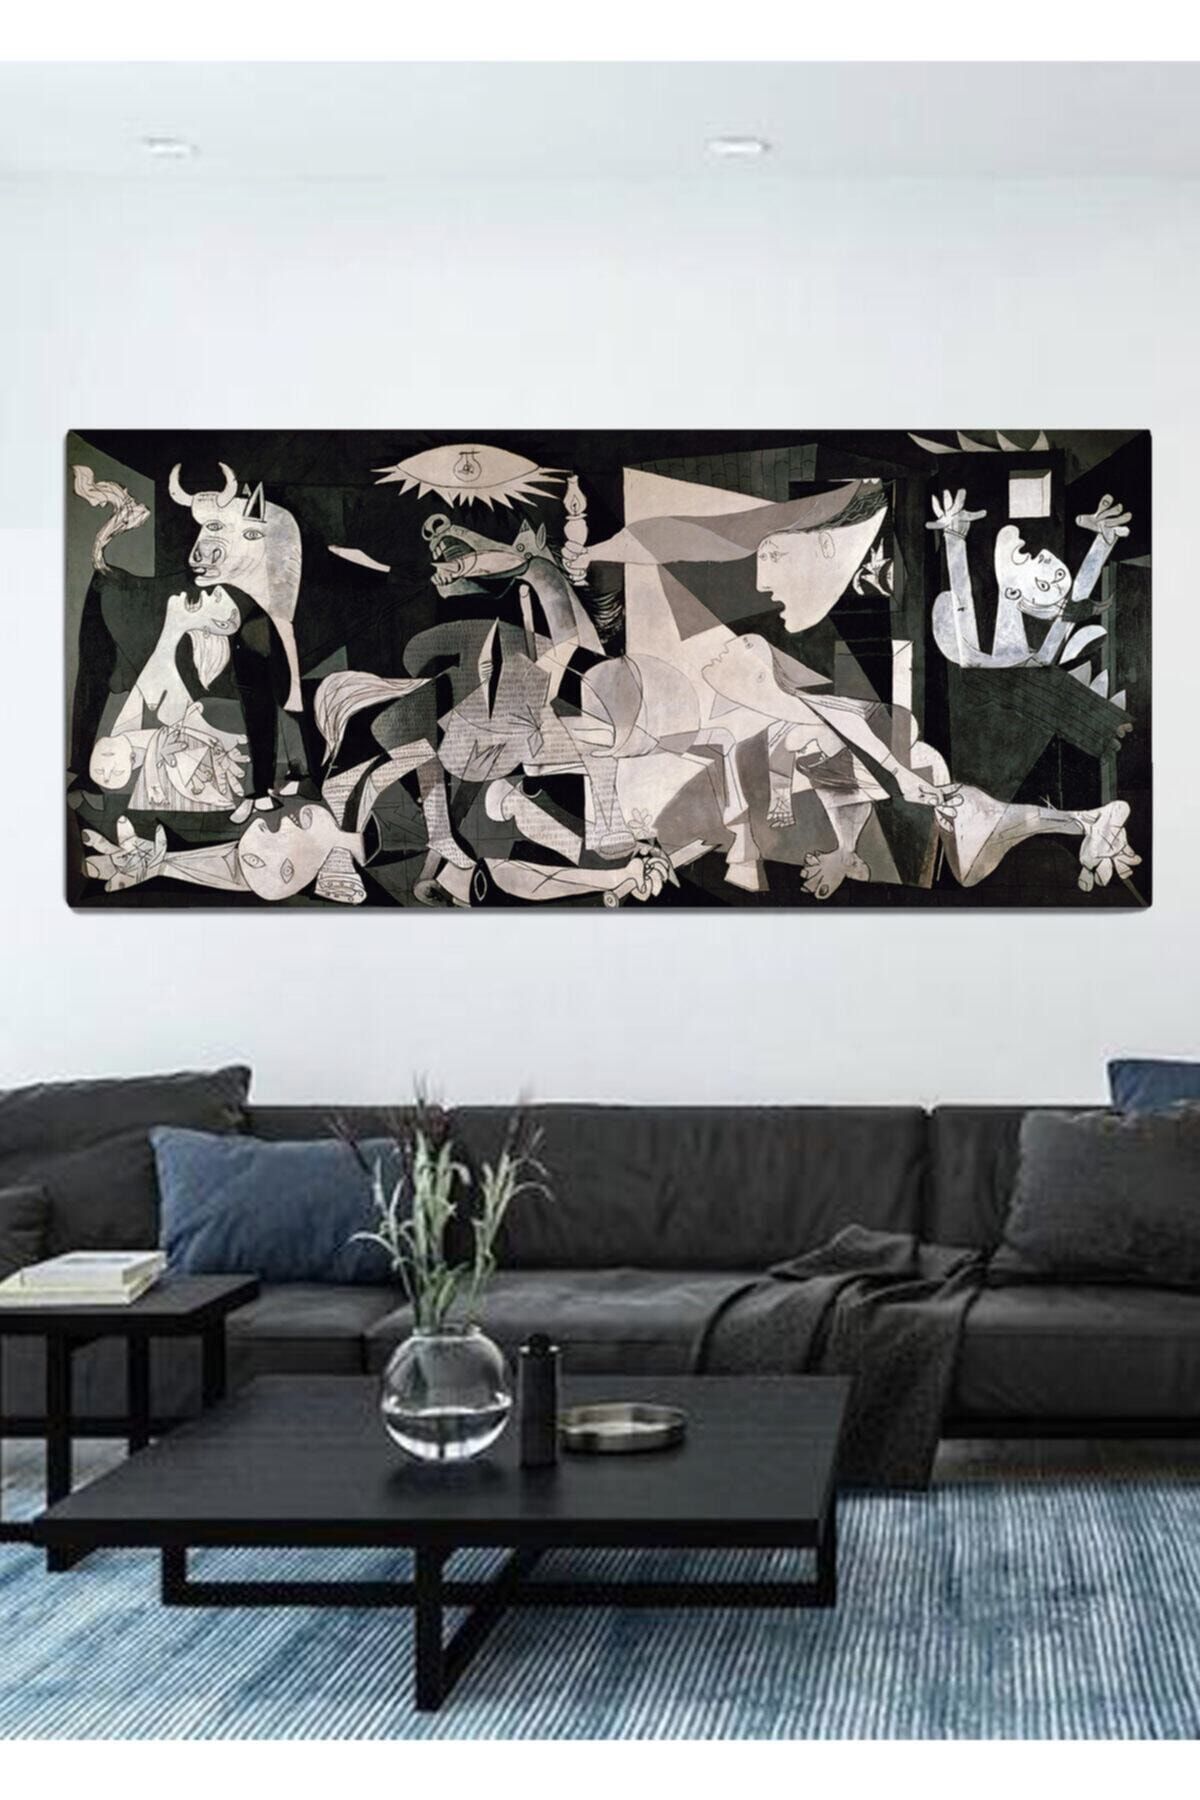 ColorVision Pablo Picasso Guernica Kanvas Tablo 70x150 Cm